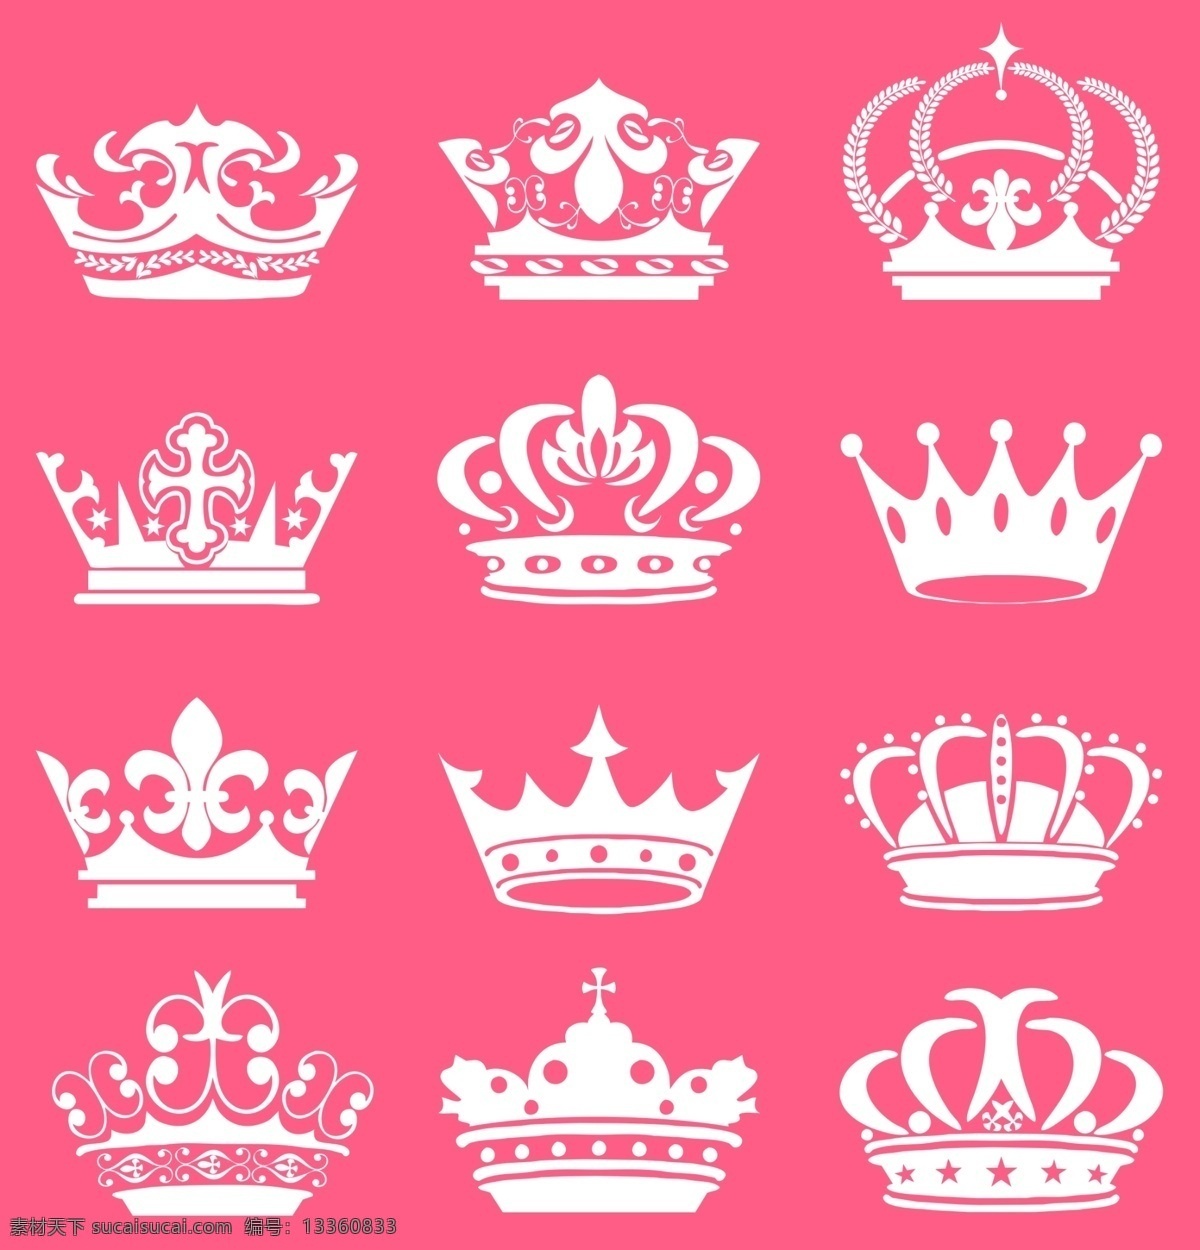 高清 皇冠 ps形状 皇冠logo 粉色